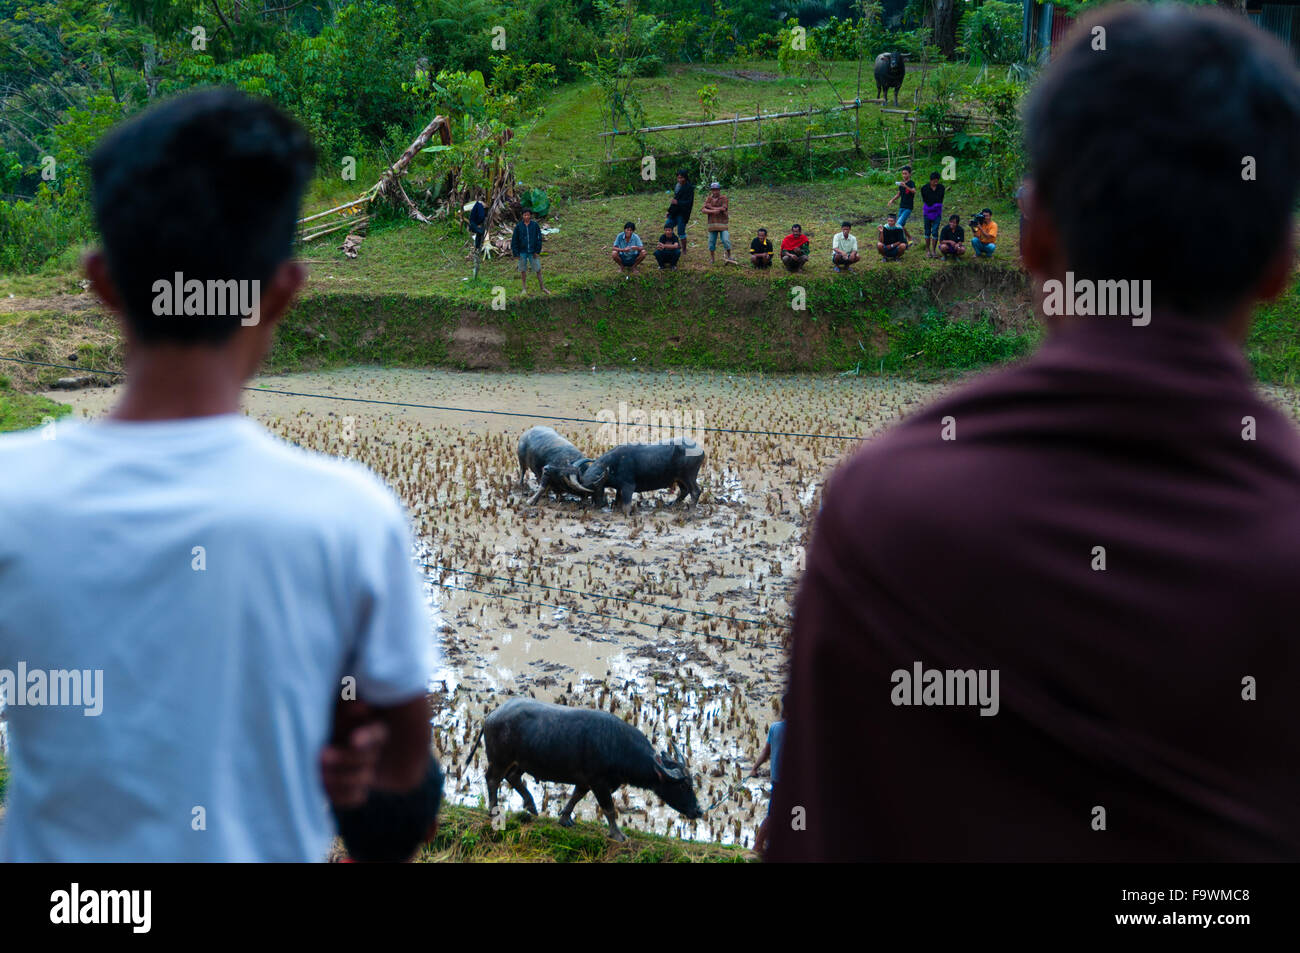 Zwei Personen von hinten beobachten zwei Büffel im Feld kämpfen Stockfoto